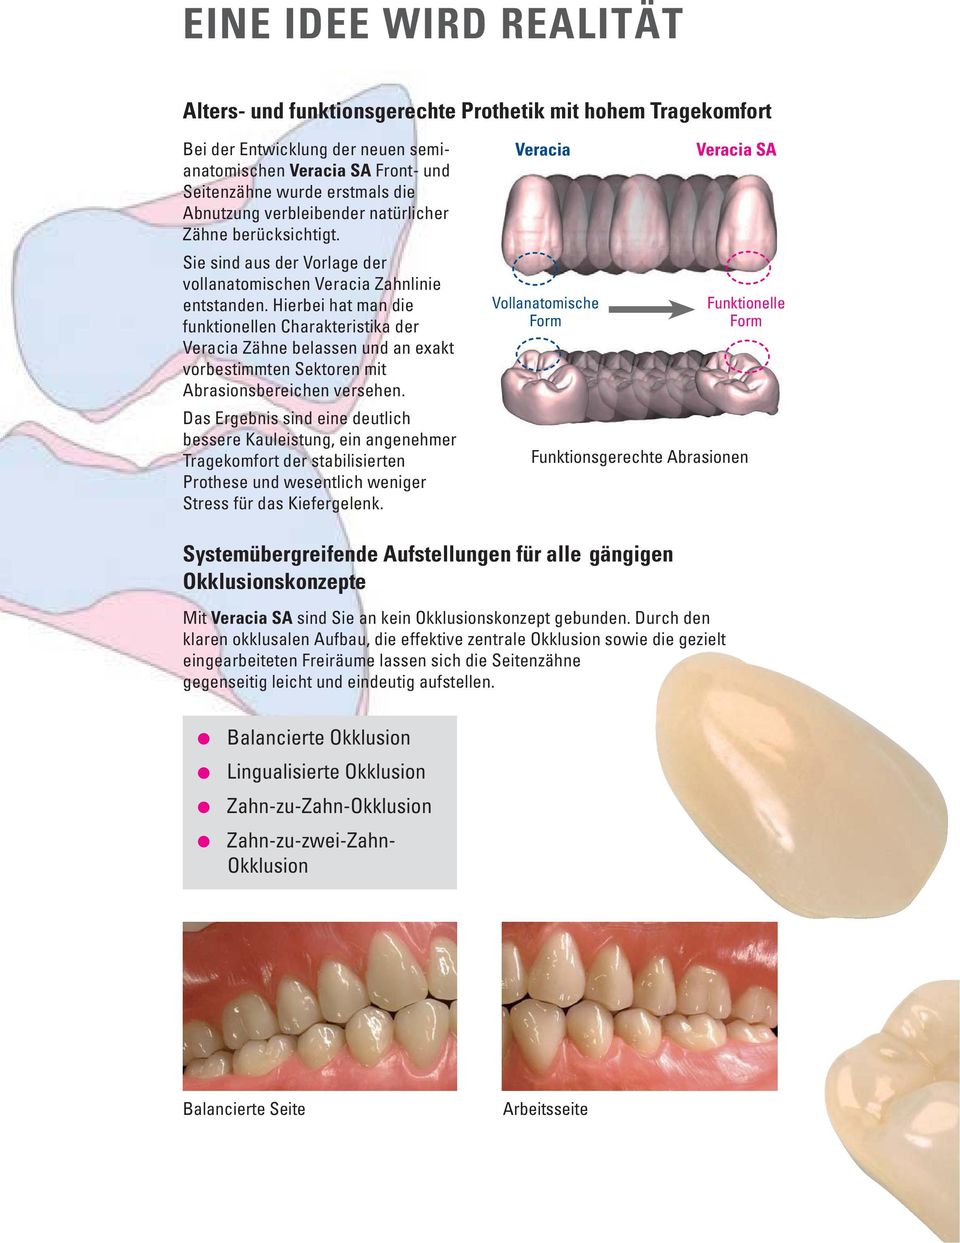 Hierbei hat man die funktionellen Charakteristika der Veracia Zähne belassen und an exakt vorbestimmten Sektoren mit Abrasions bereichen versehen.